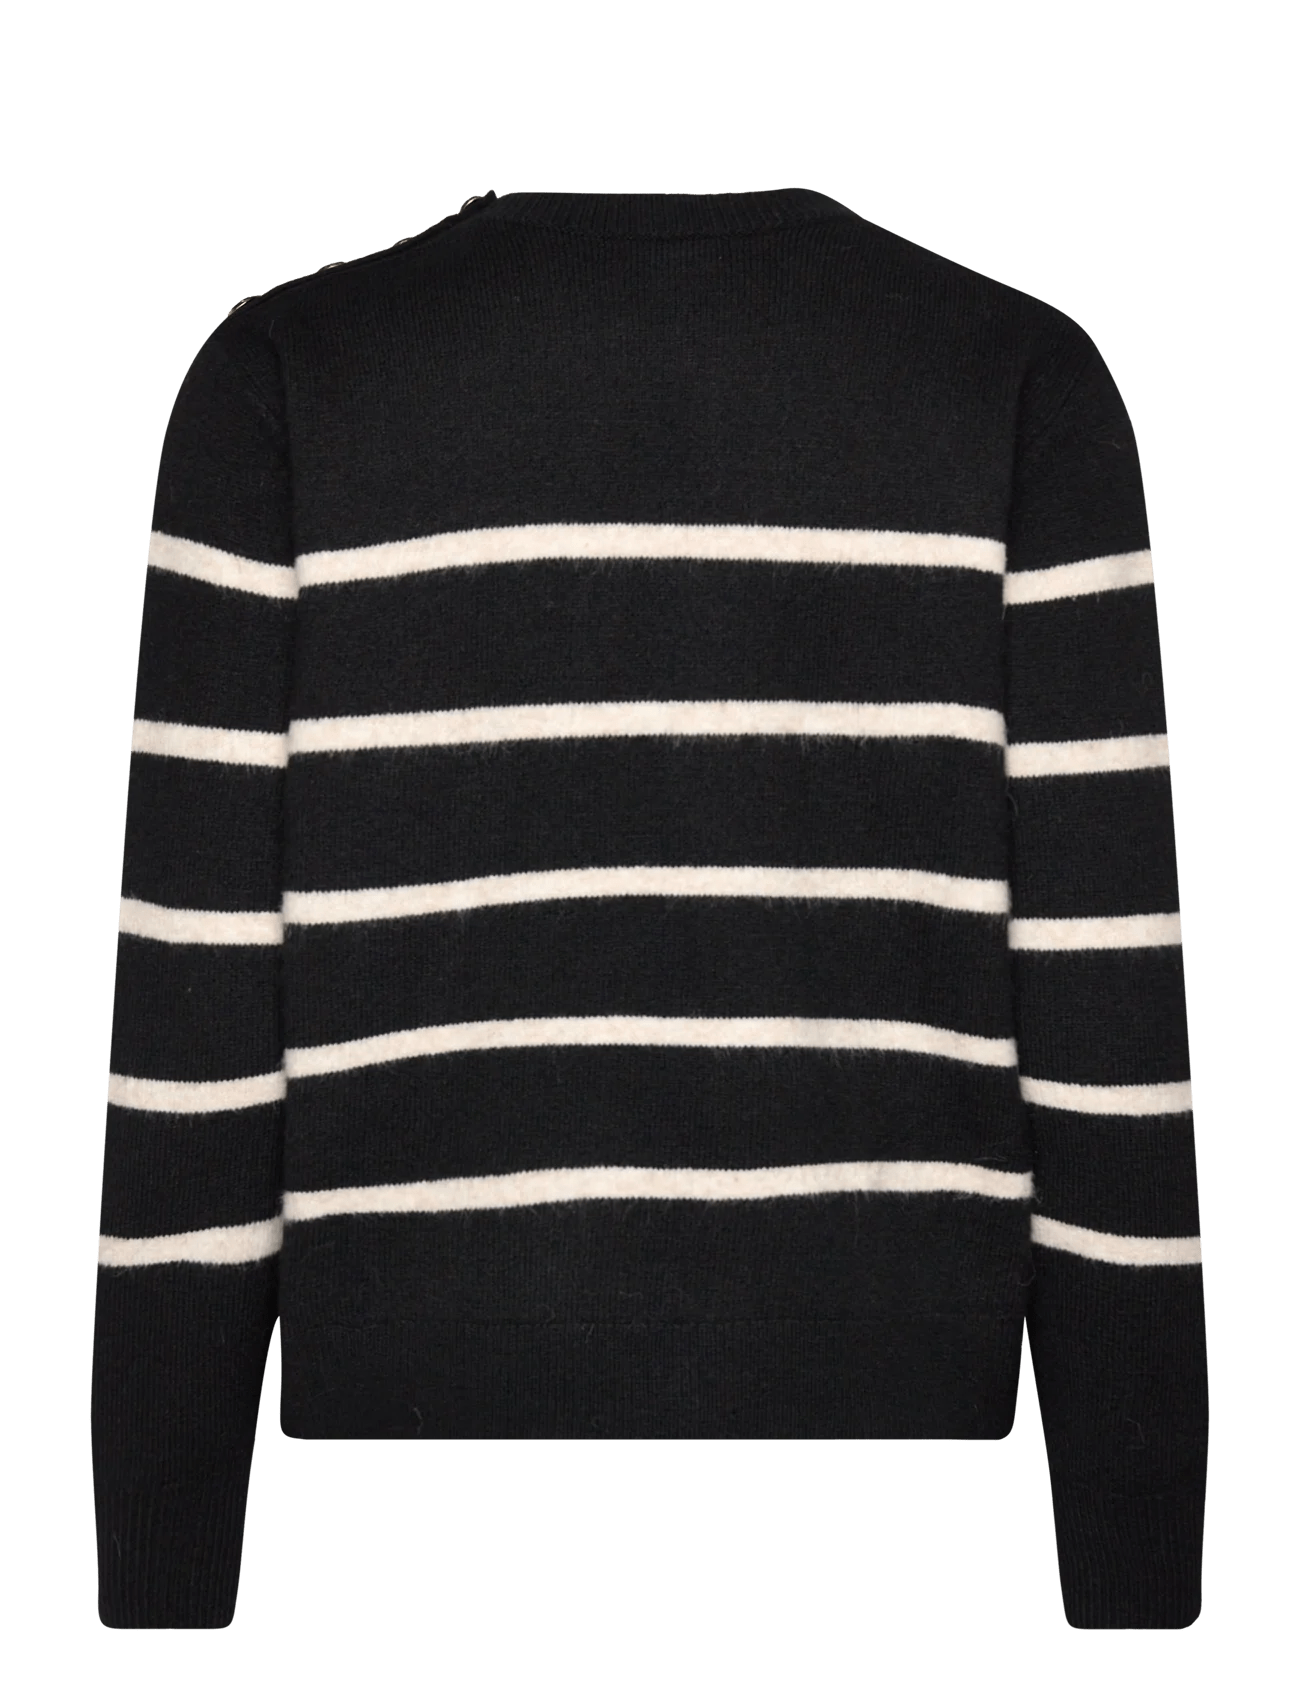 Paul Noir SweaterSweater